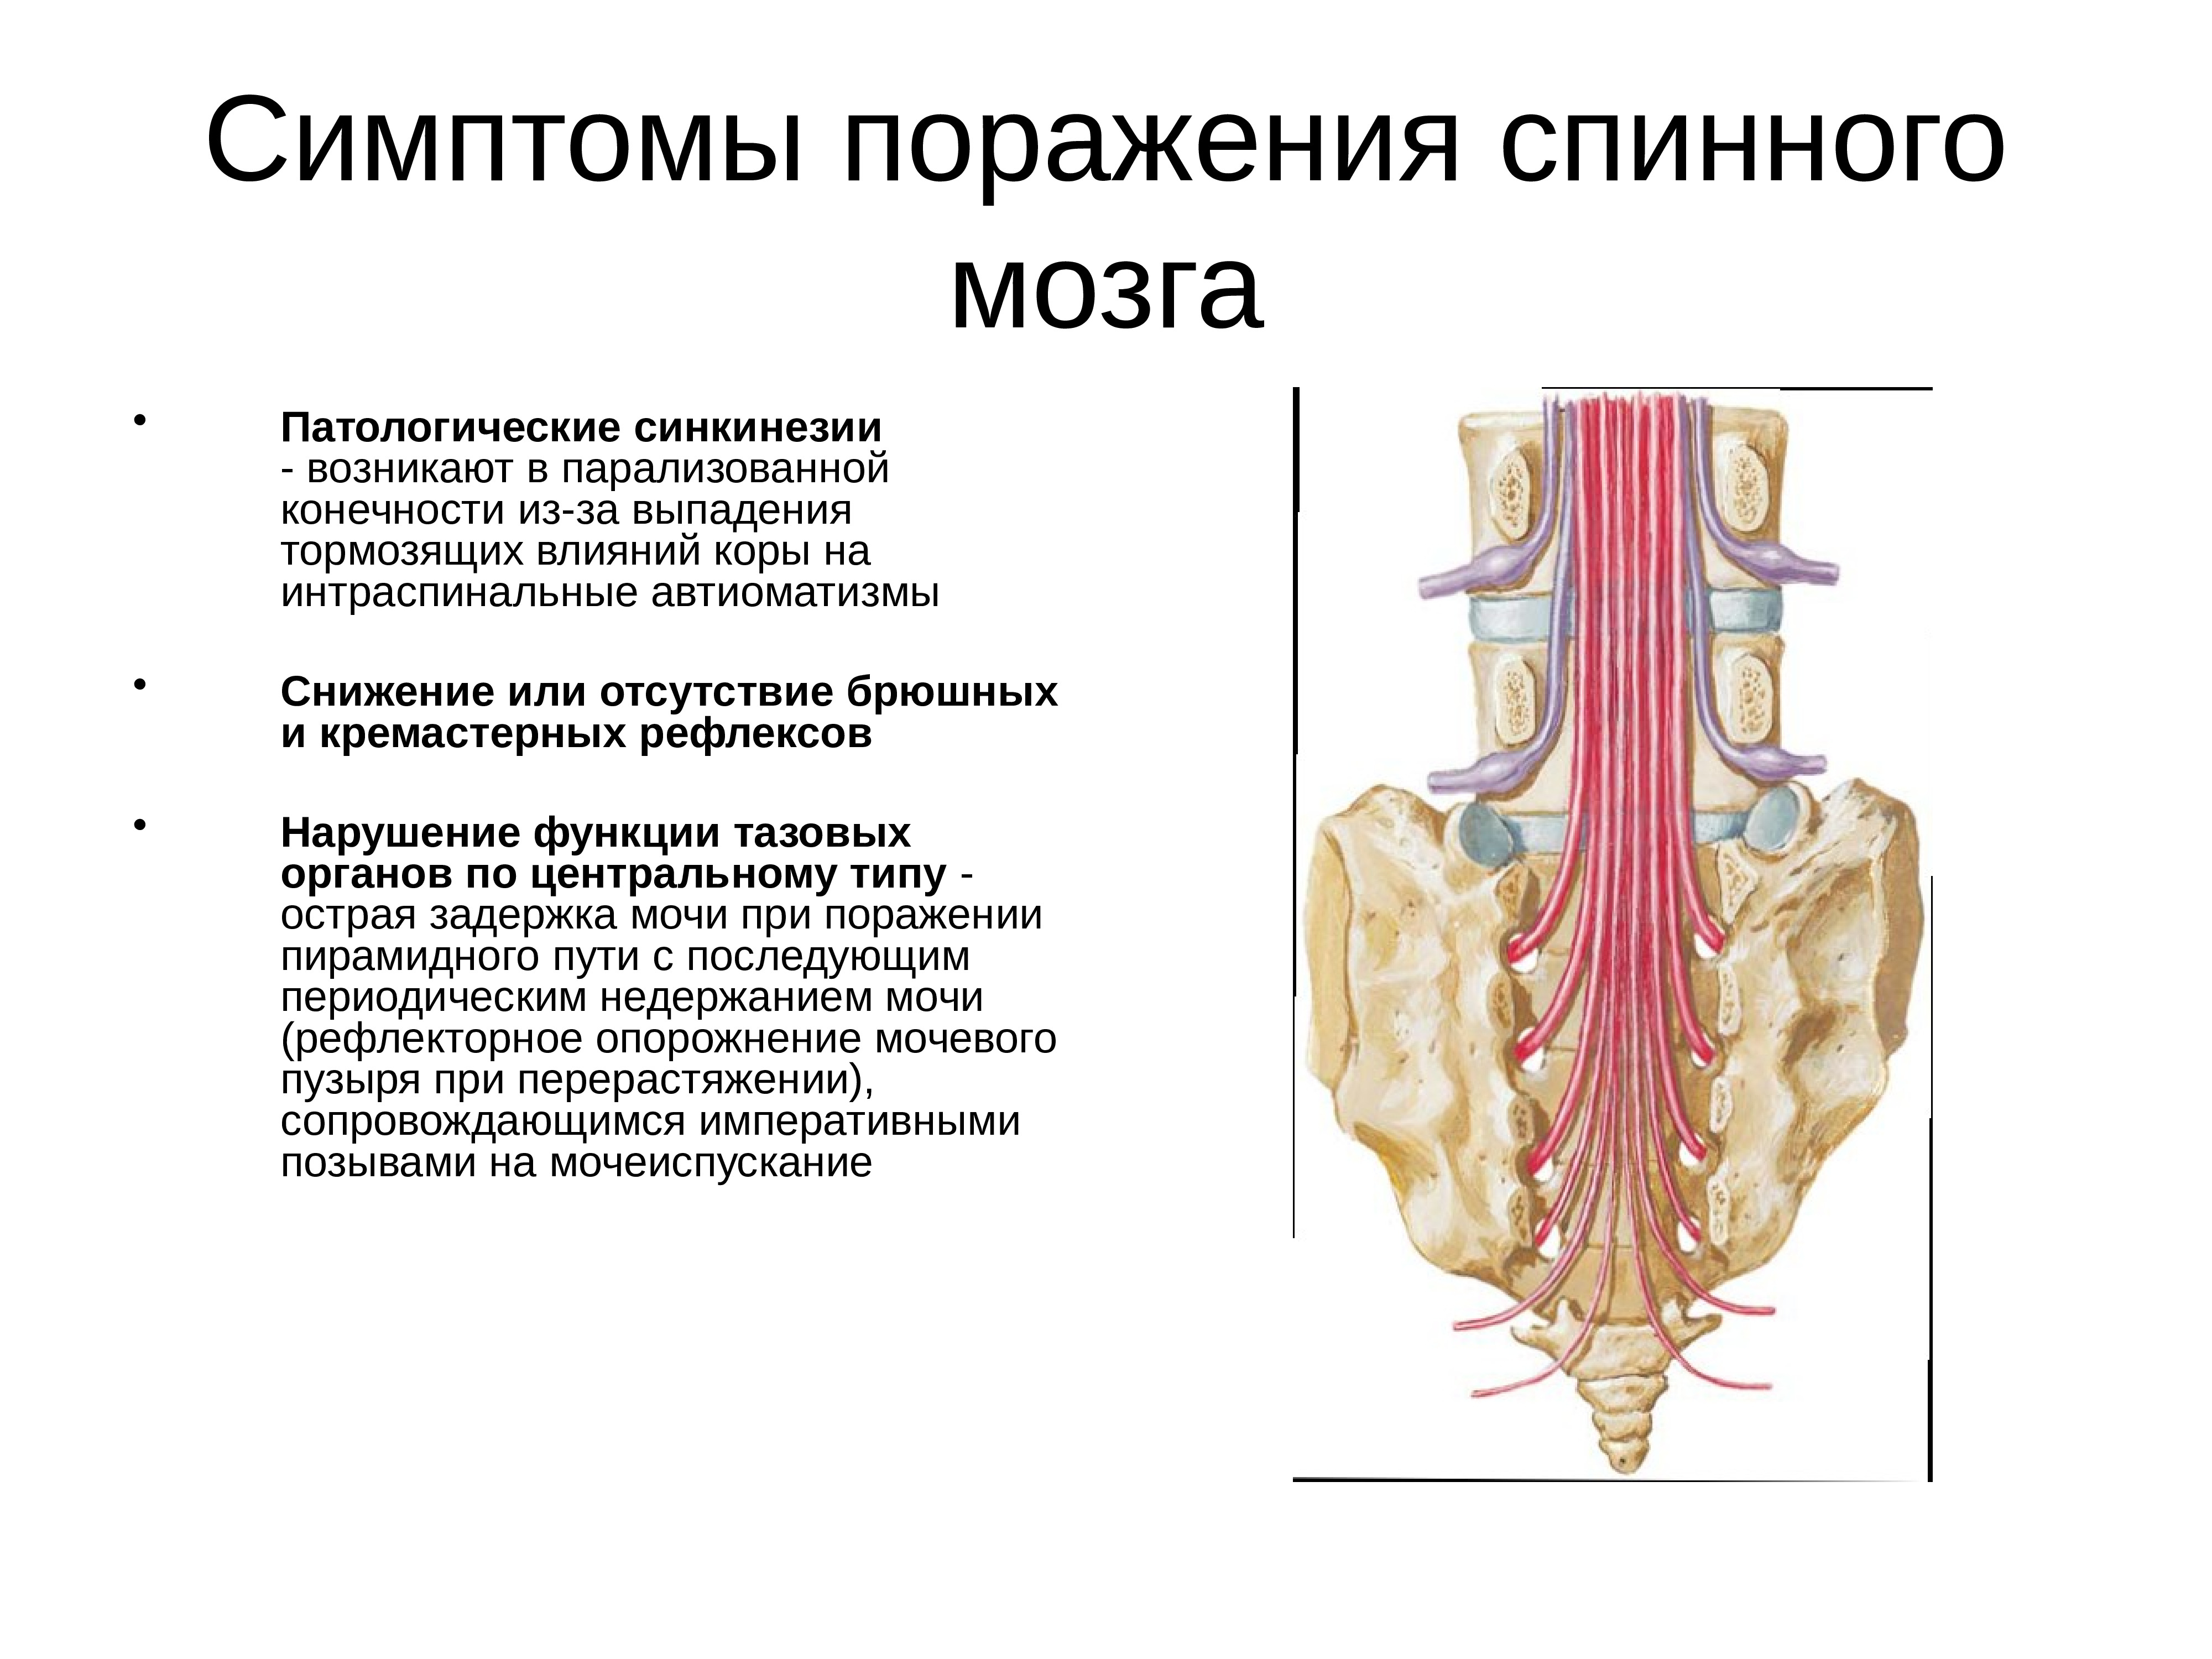 Поражение спинного. Признаки поражения спинного мозга. Симптомы поражения шейного отдела спинного мозга. Симптомы поражения верхнешейного отдела спинного мозга. Поражение грудного отдела спинного мозга.